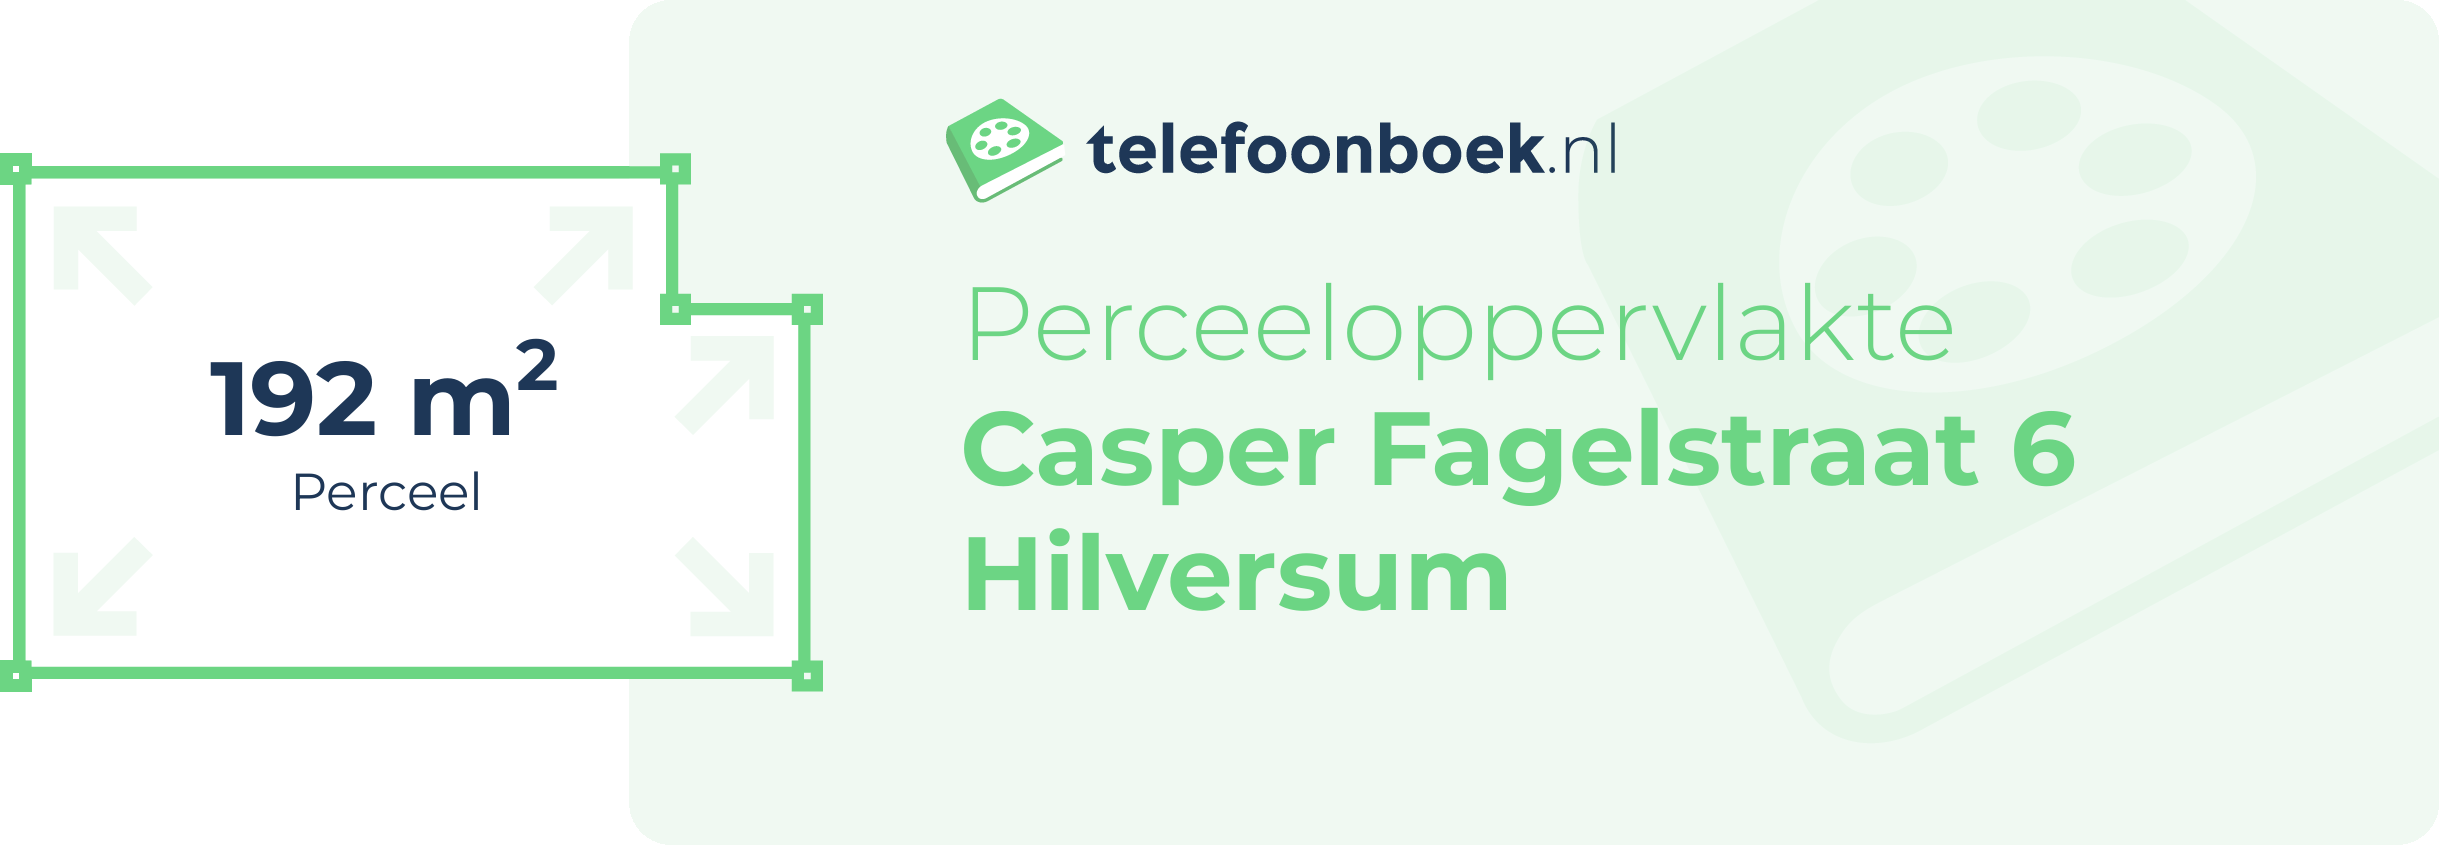 Perceeloppervlakte Casper Fagelstraat 6 Hilversum